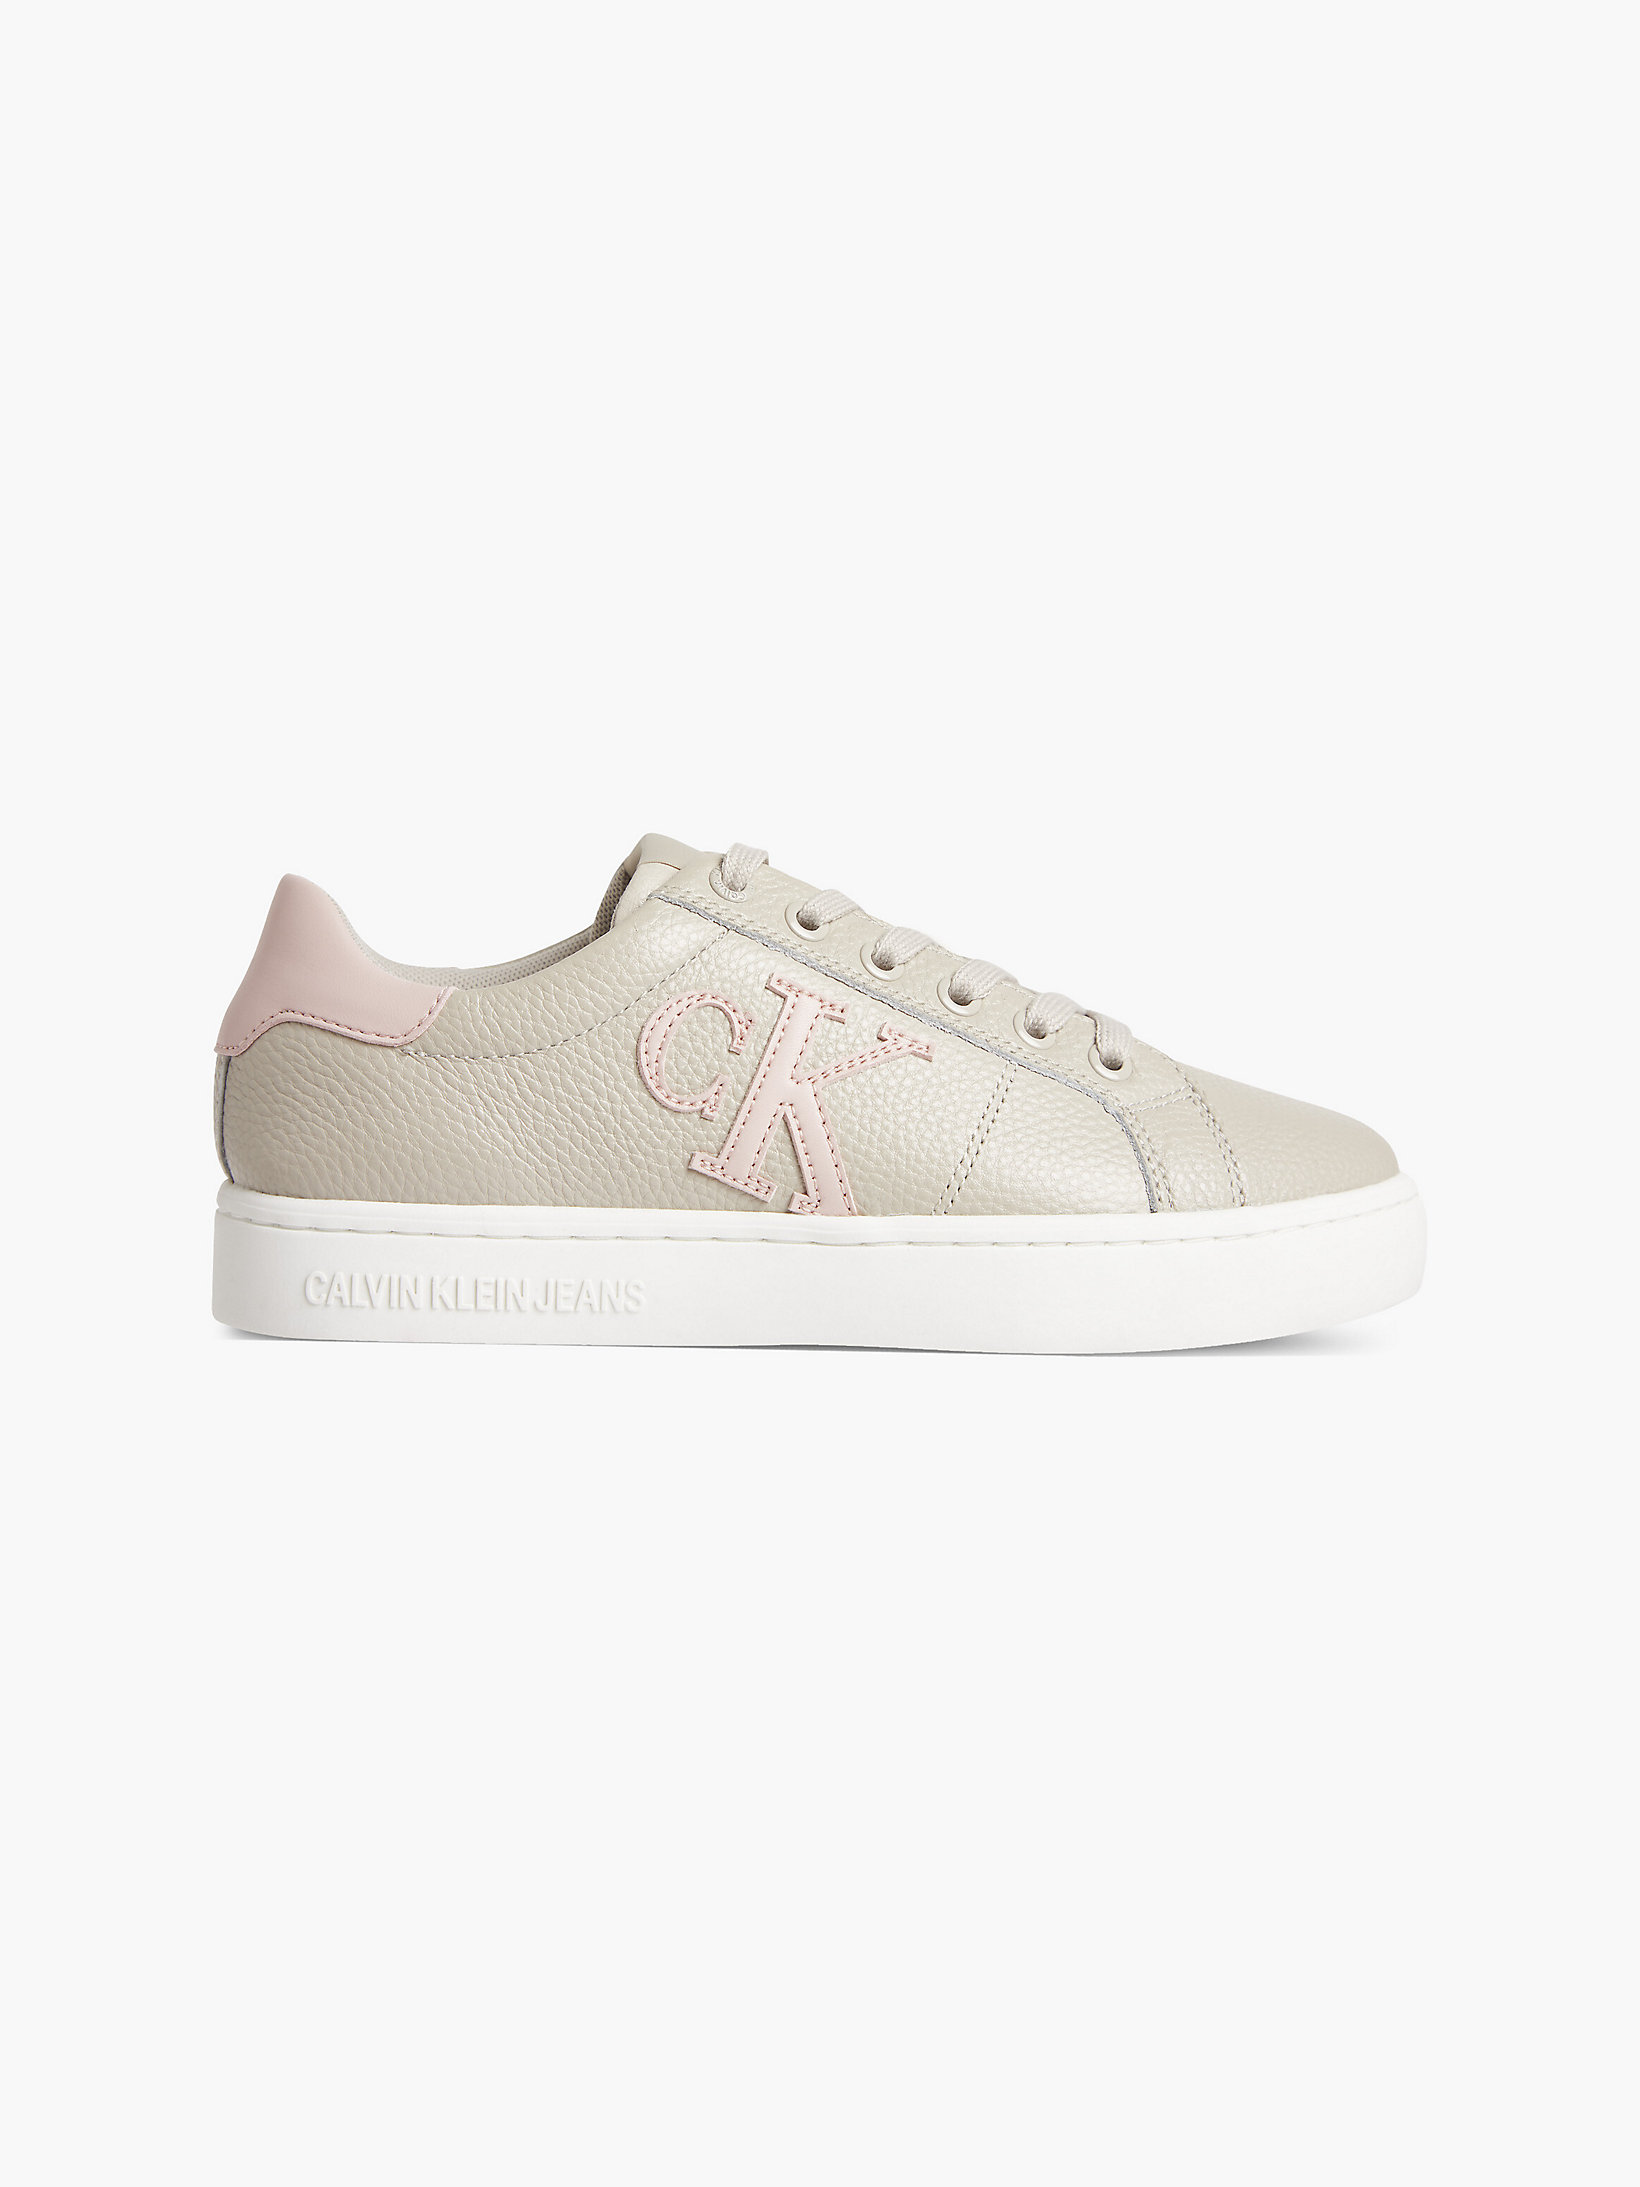 Eggshell/pink Blush > Leder-Sneakers > undefined Damen - Calvin Klein